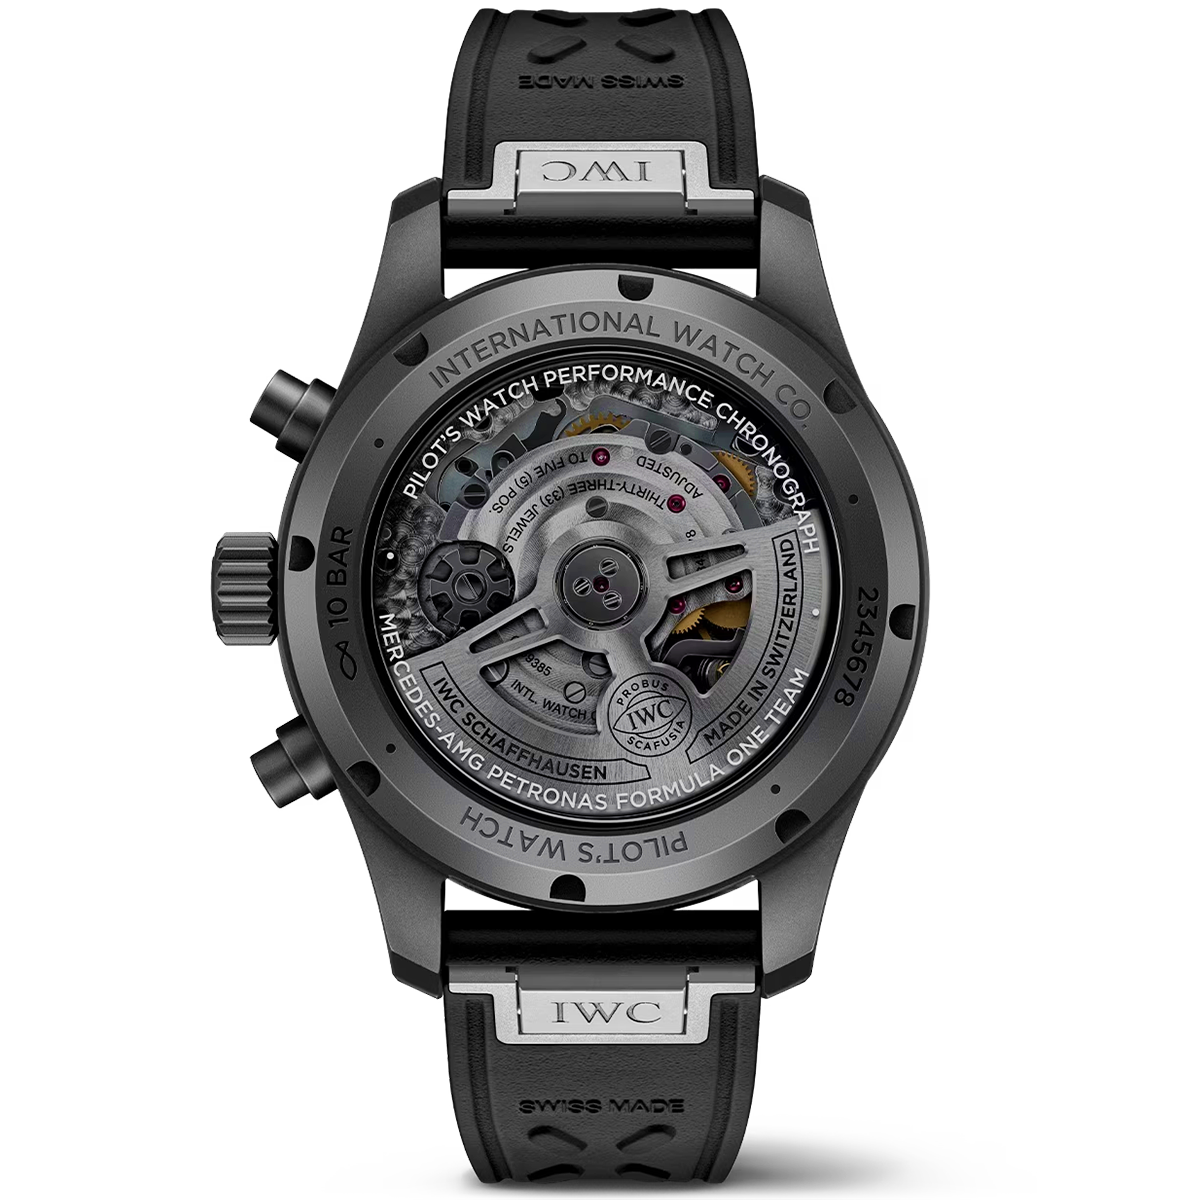 Pilot's Mercedes-AMG Petronas Formula One Team Edition Ceratanium Watch